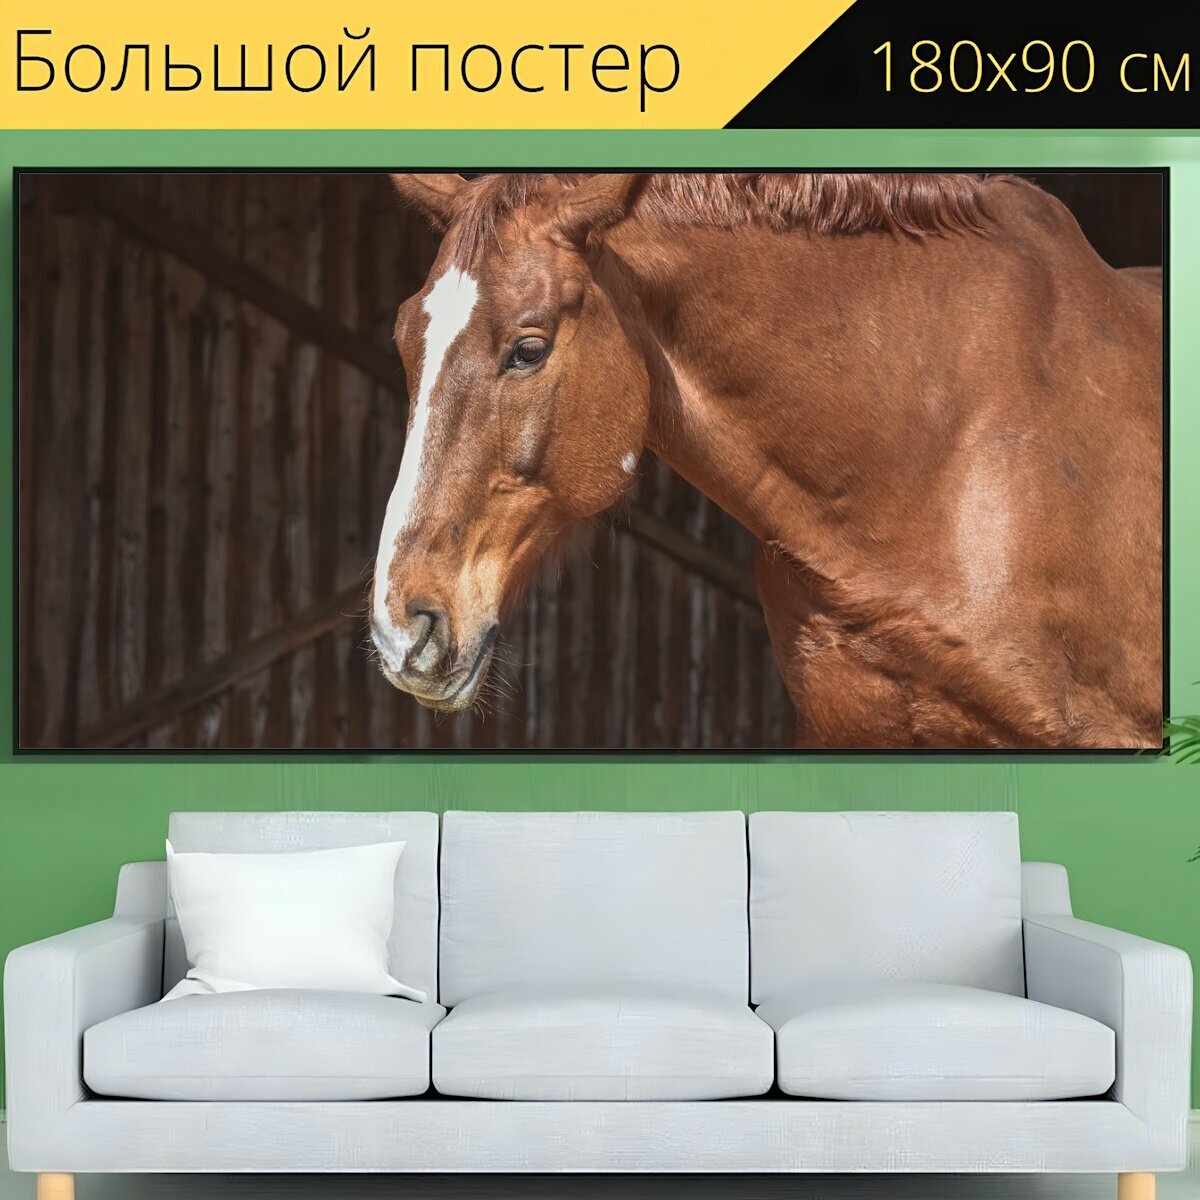 Большой постер "Лошадь, жеребец, животное" 180 x 90 см. для интерьера